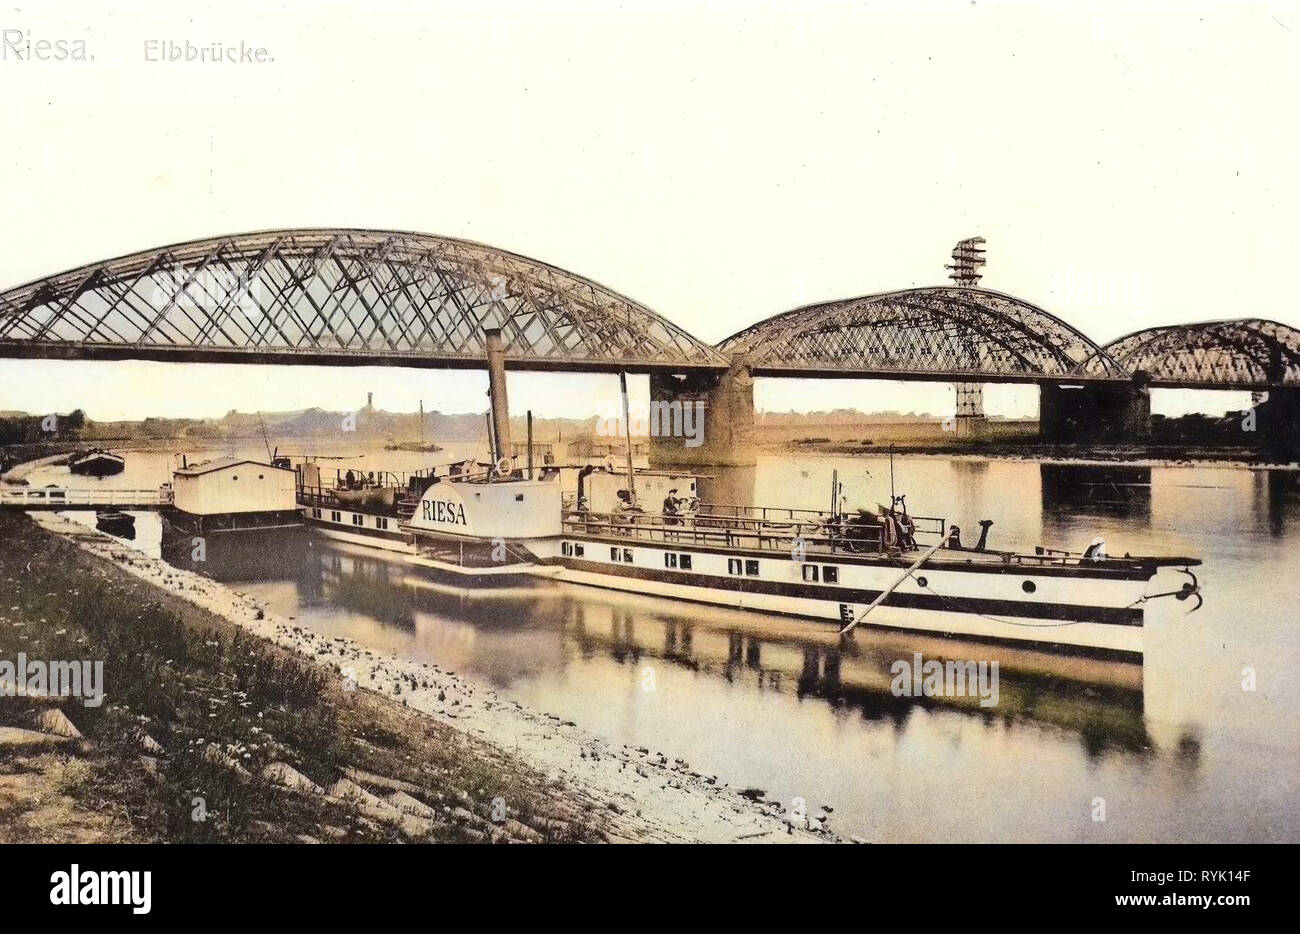 Bridges in Riesa, Elbe in Riesa, Riesa (ship, 1897), Piers in Saxony, 1913, Landkreis Meißen, Riesa, Elbbrücke mit Dampfer Riesa, Germany Stock Photo